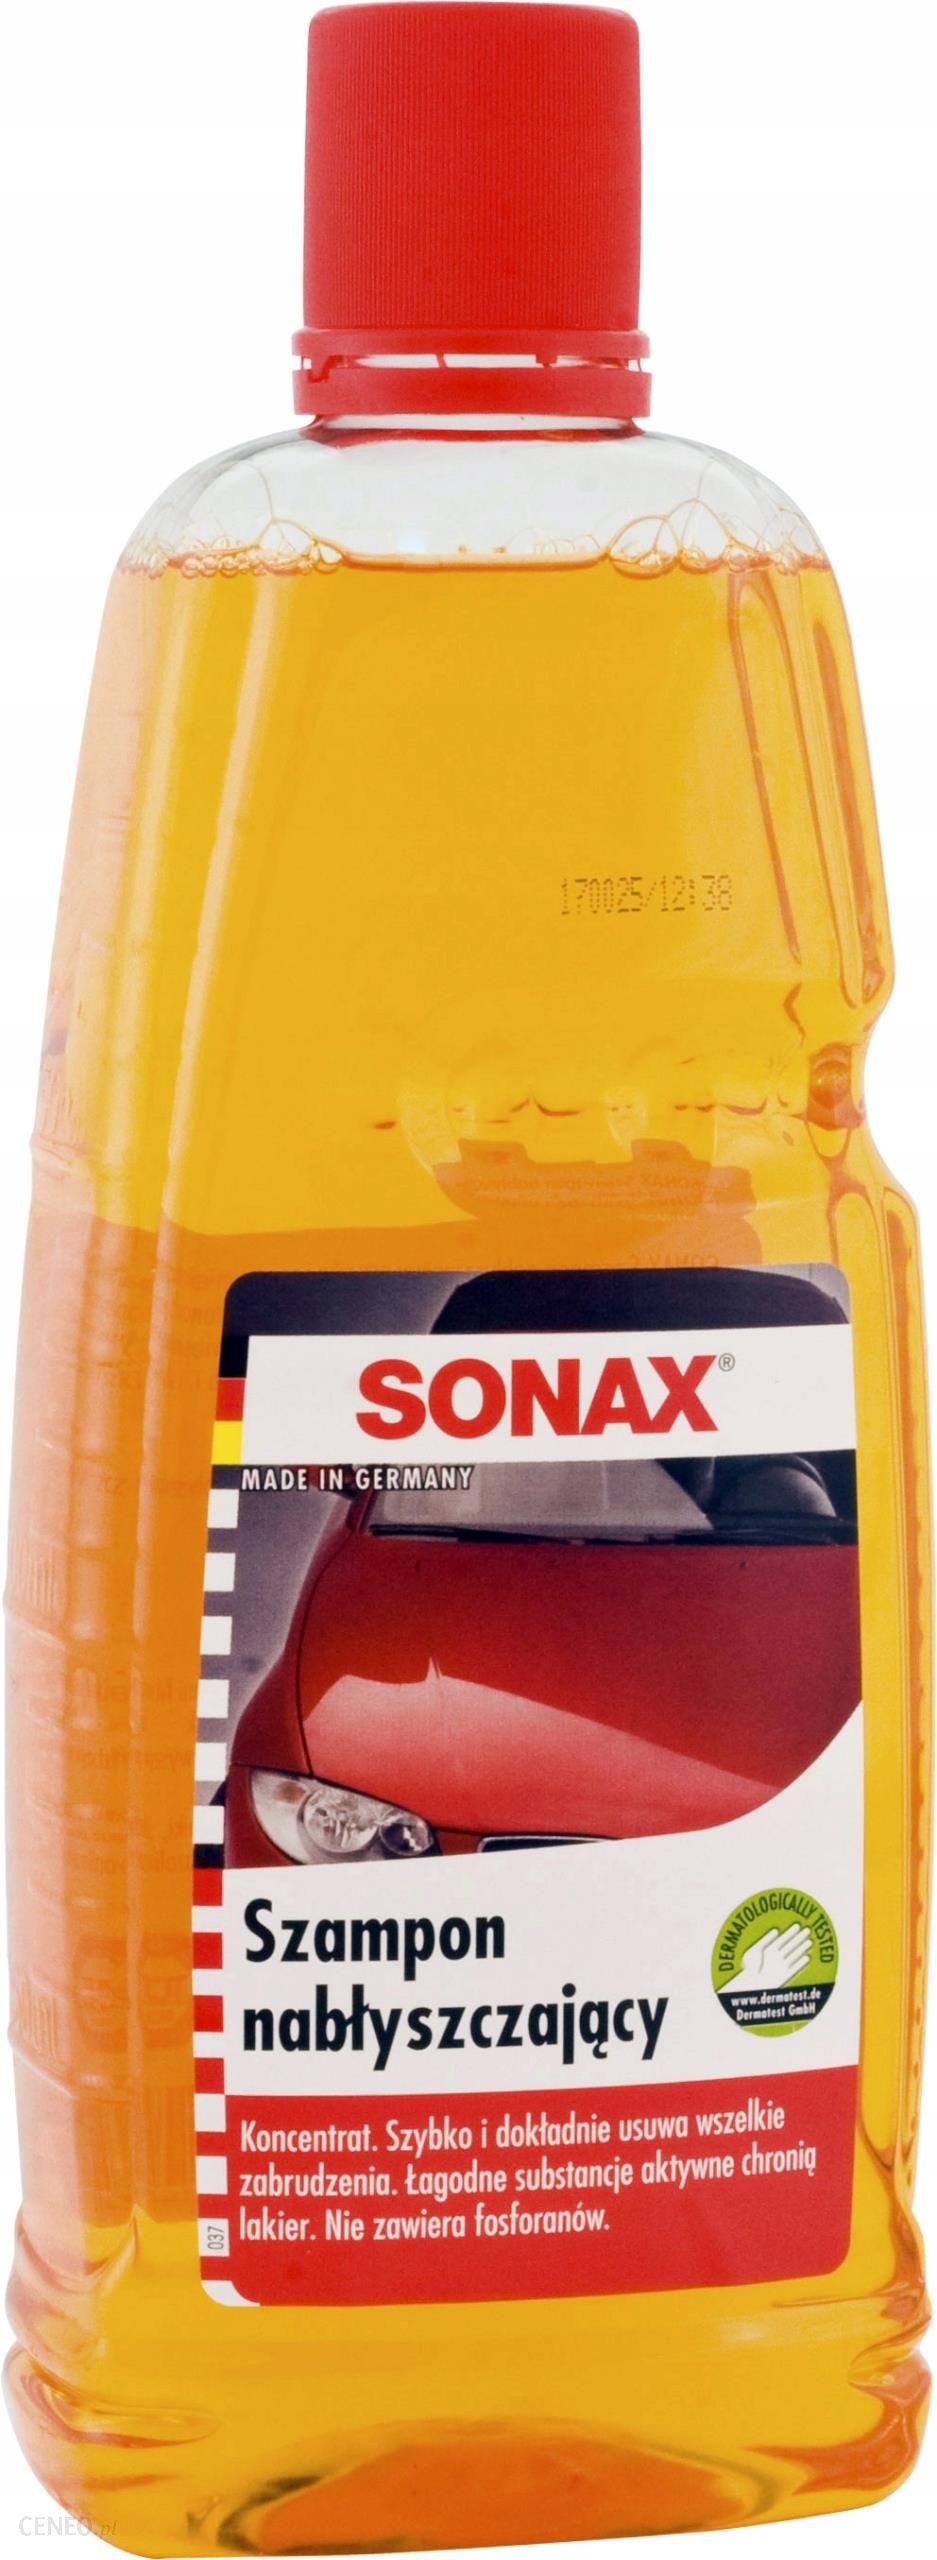 sonax szampon nabłyszczający